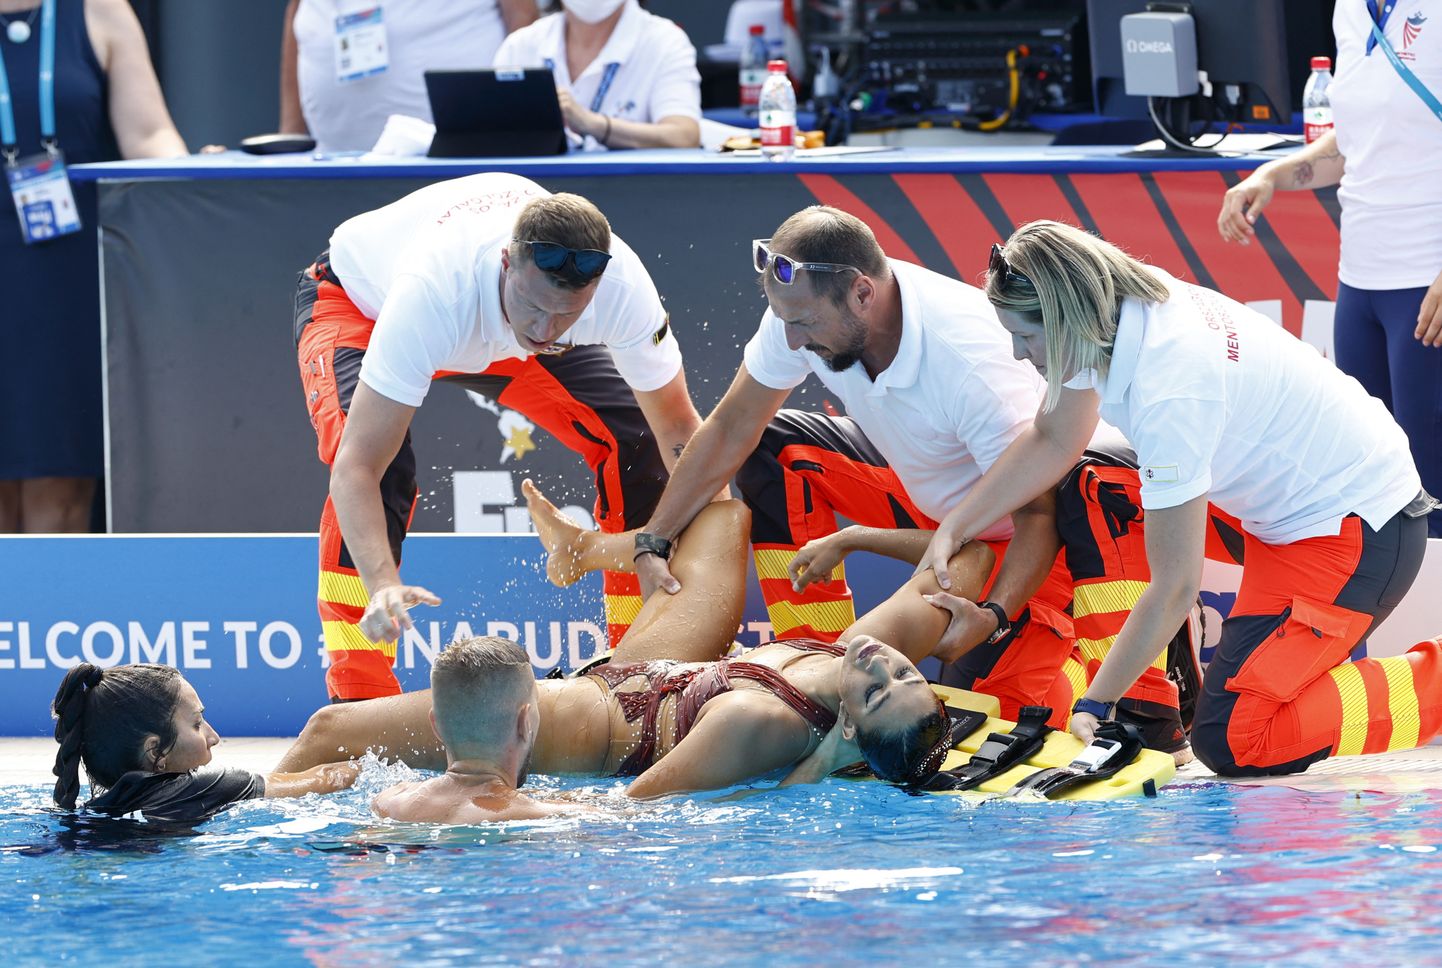 Ameeriklanna Anita Alvarez kaotas ujumise MMil teadvuse ja vajas meedikute abi.